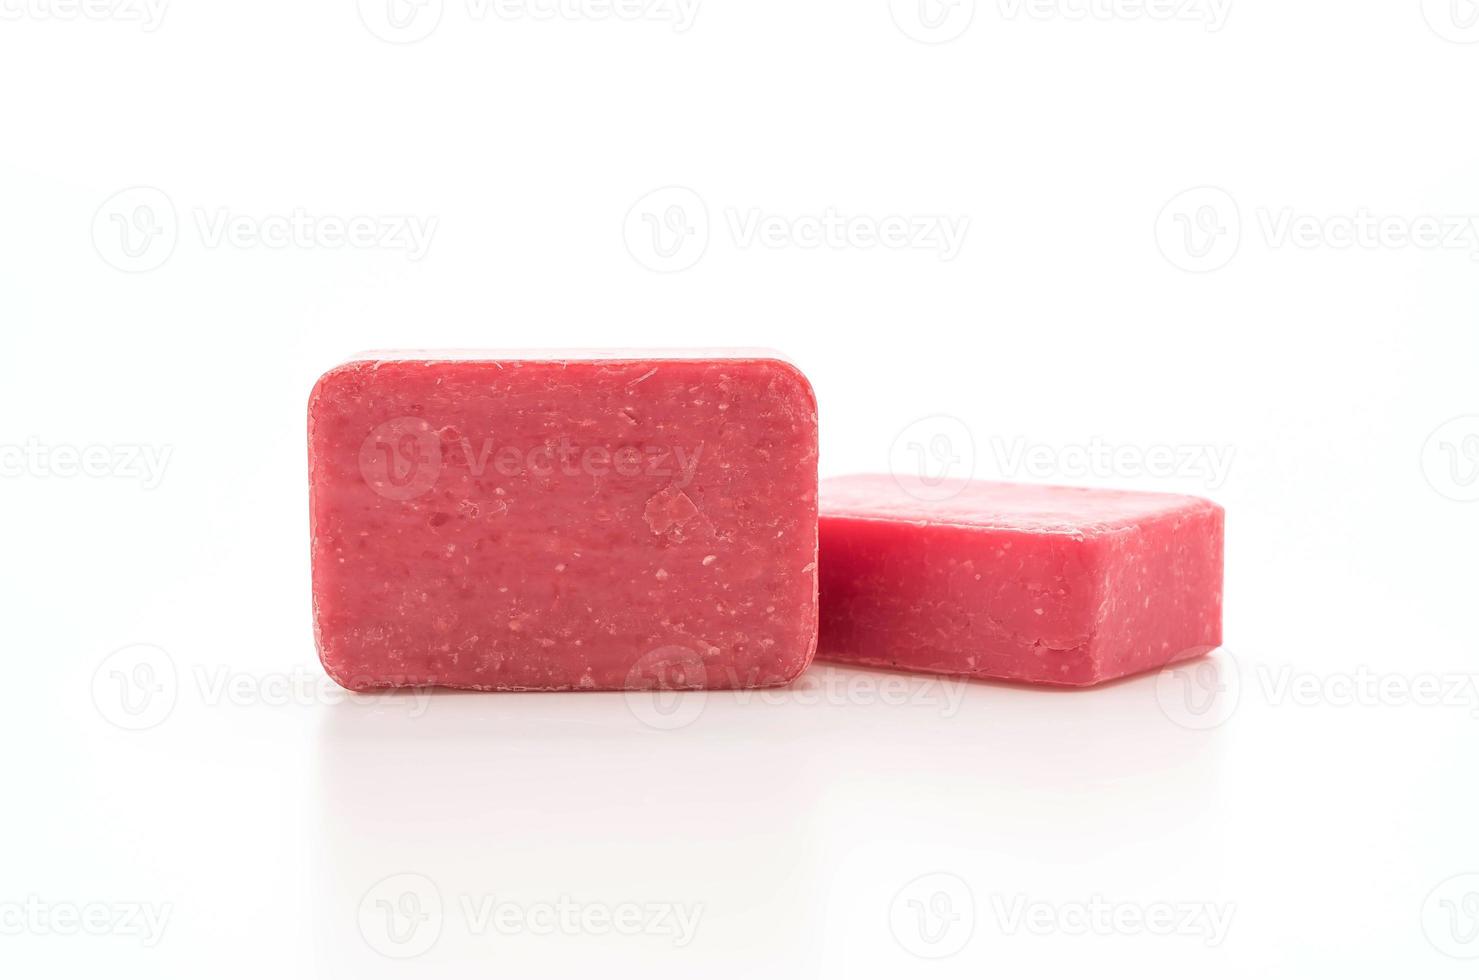 rosa Seife auf weißem Hintergrund foto